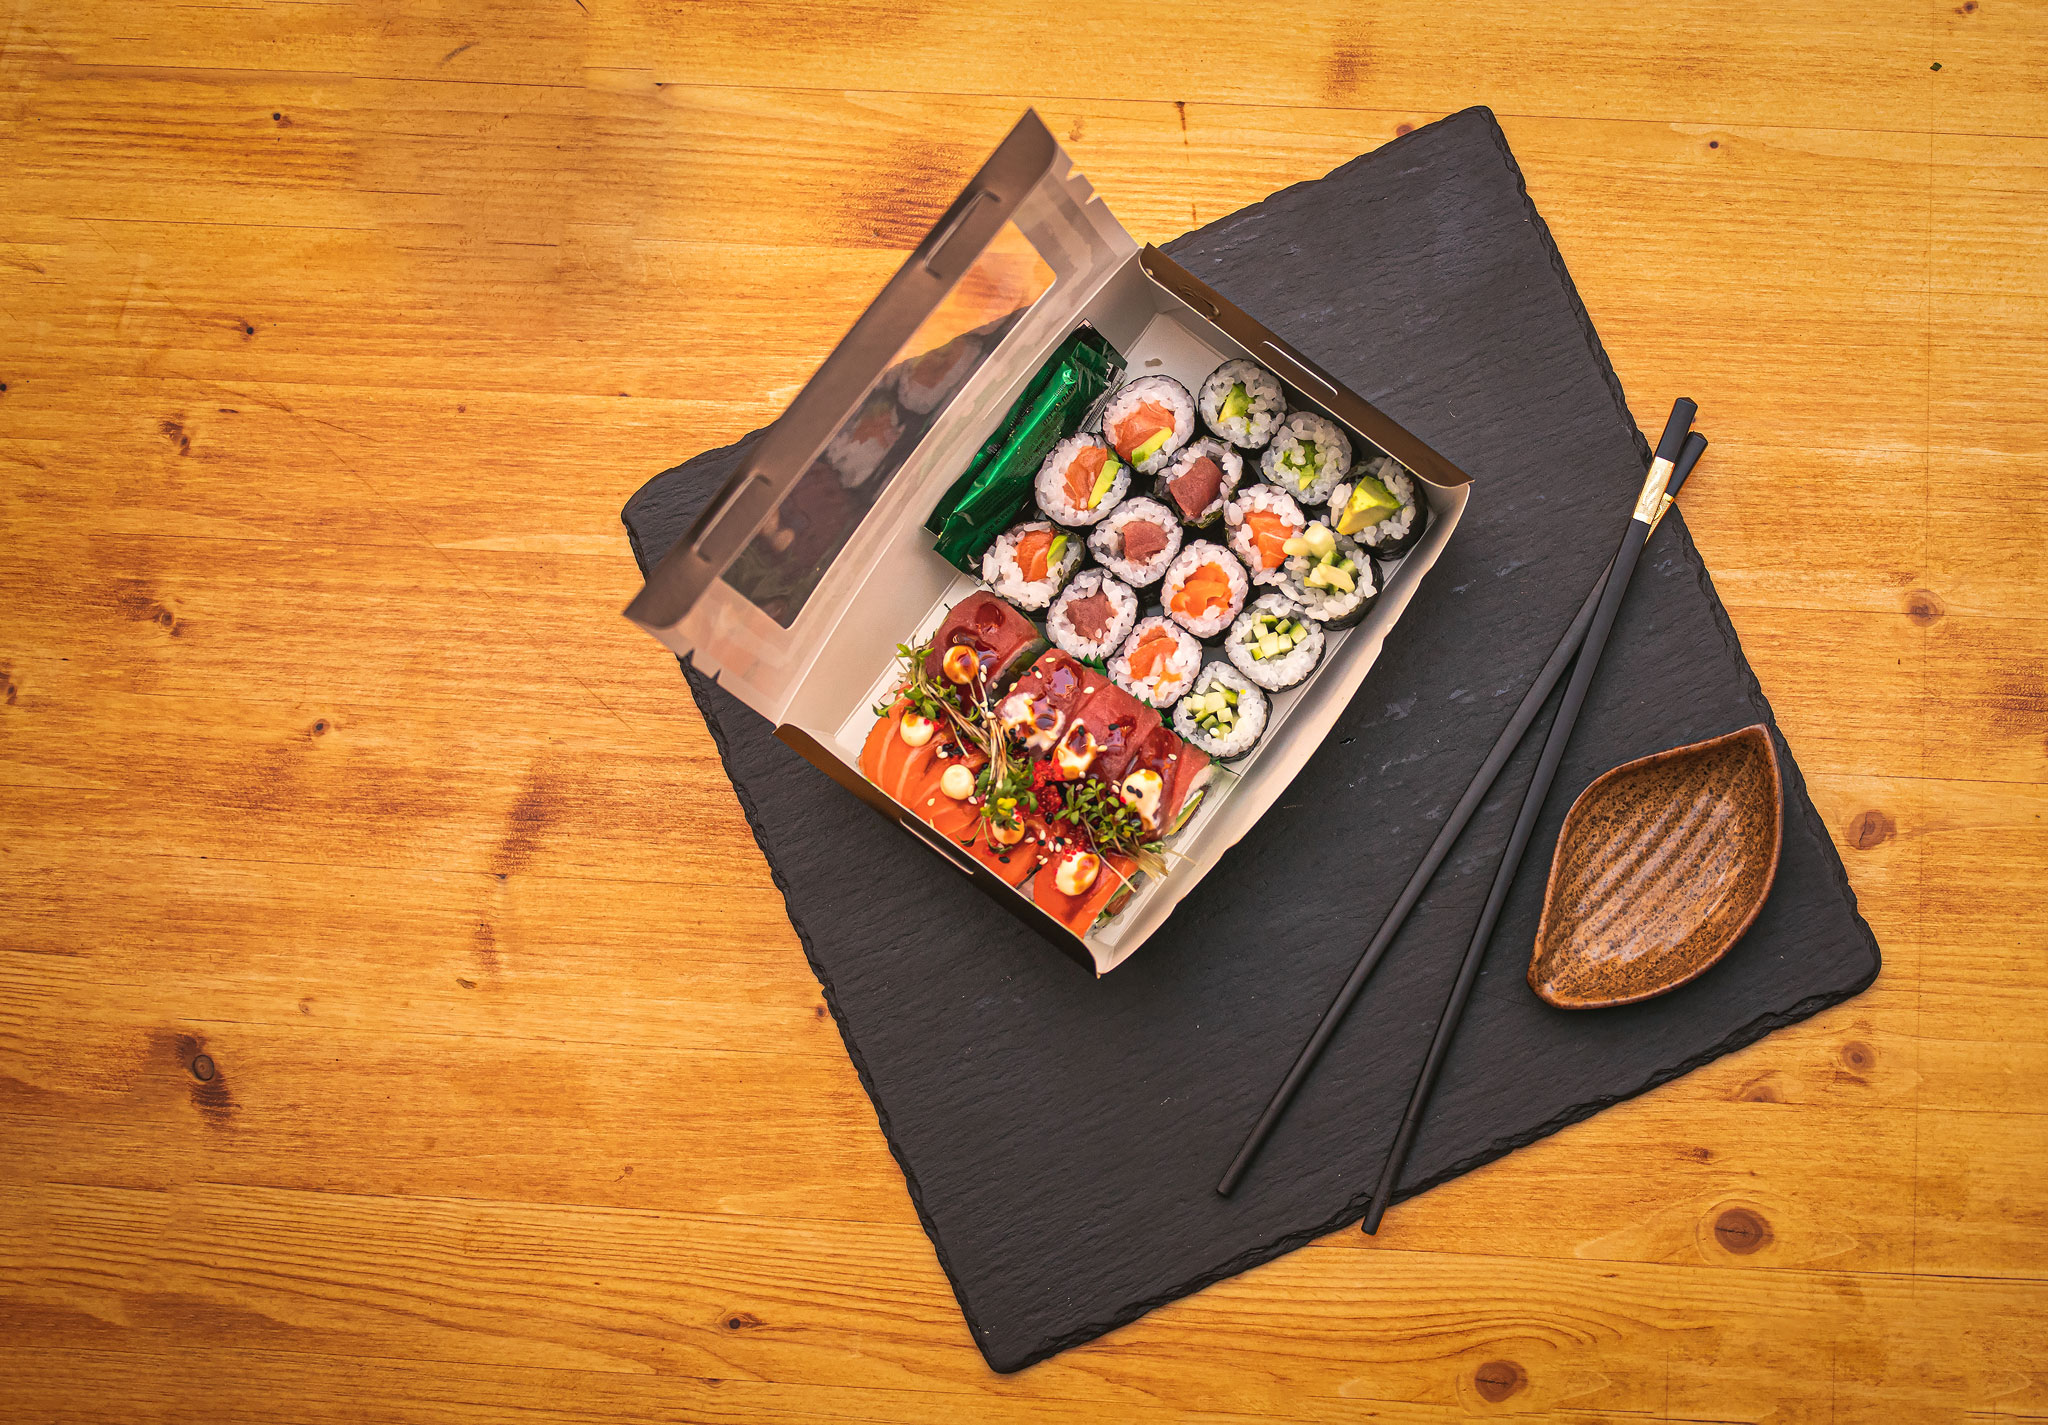 Bio Sushi-Box XL "Black Edition" 220 x 140 x 50mm mit Sichtfenster VE150